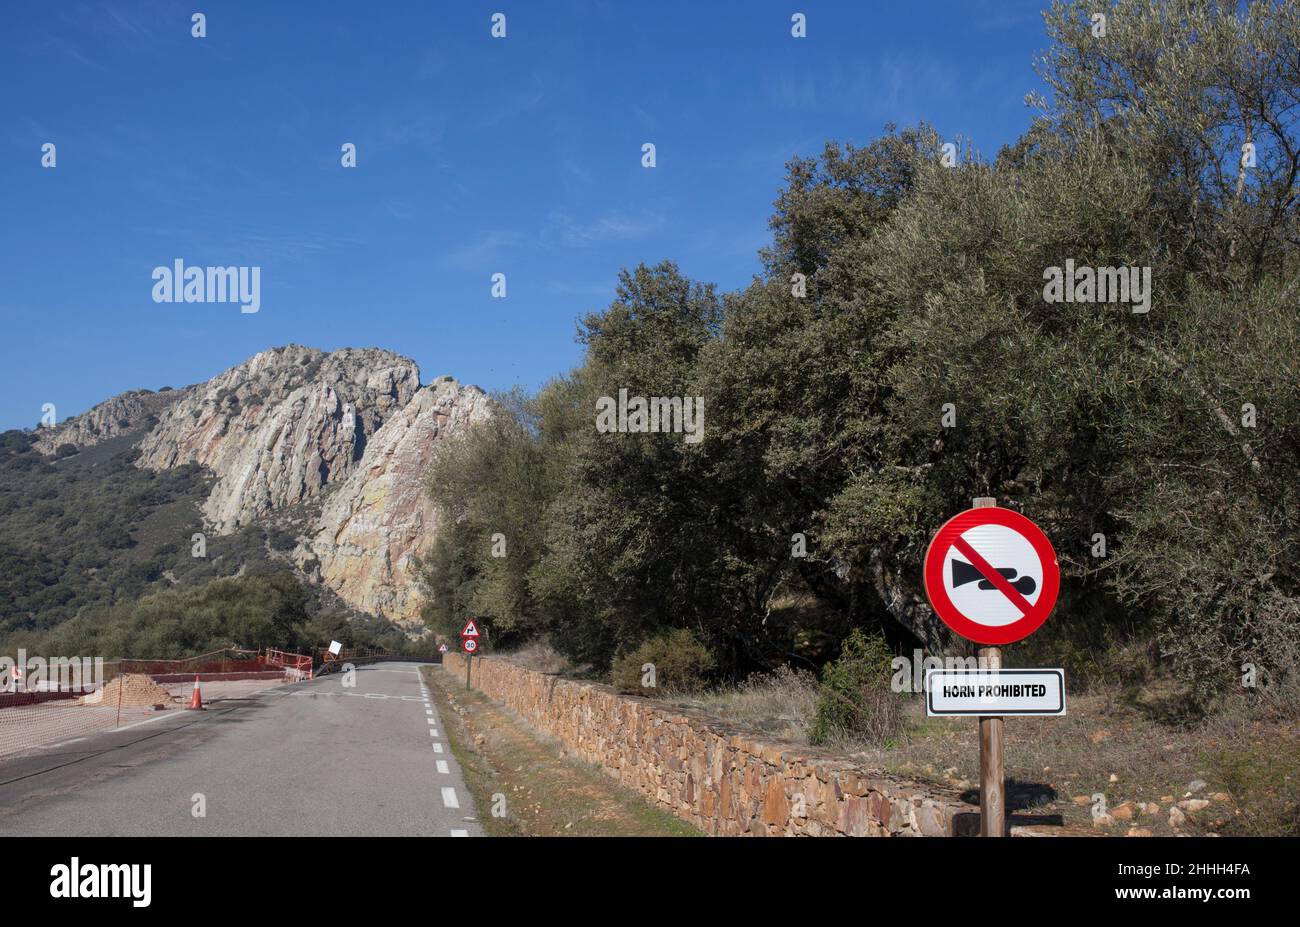 Horn vietato segno vicino a Salto del Gitano rockface, speciale sito protetto nidificazione. Parco Nazionale di Monfrague, Caceres, Extremadura, Spagna Foto Stock